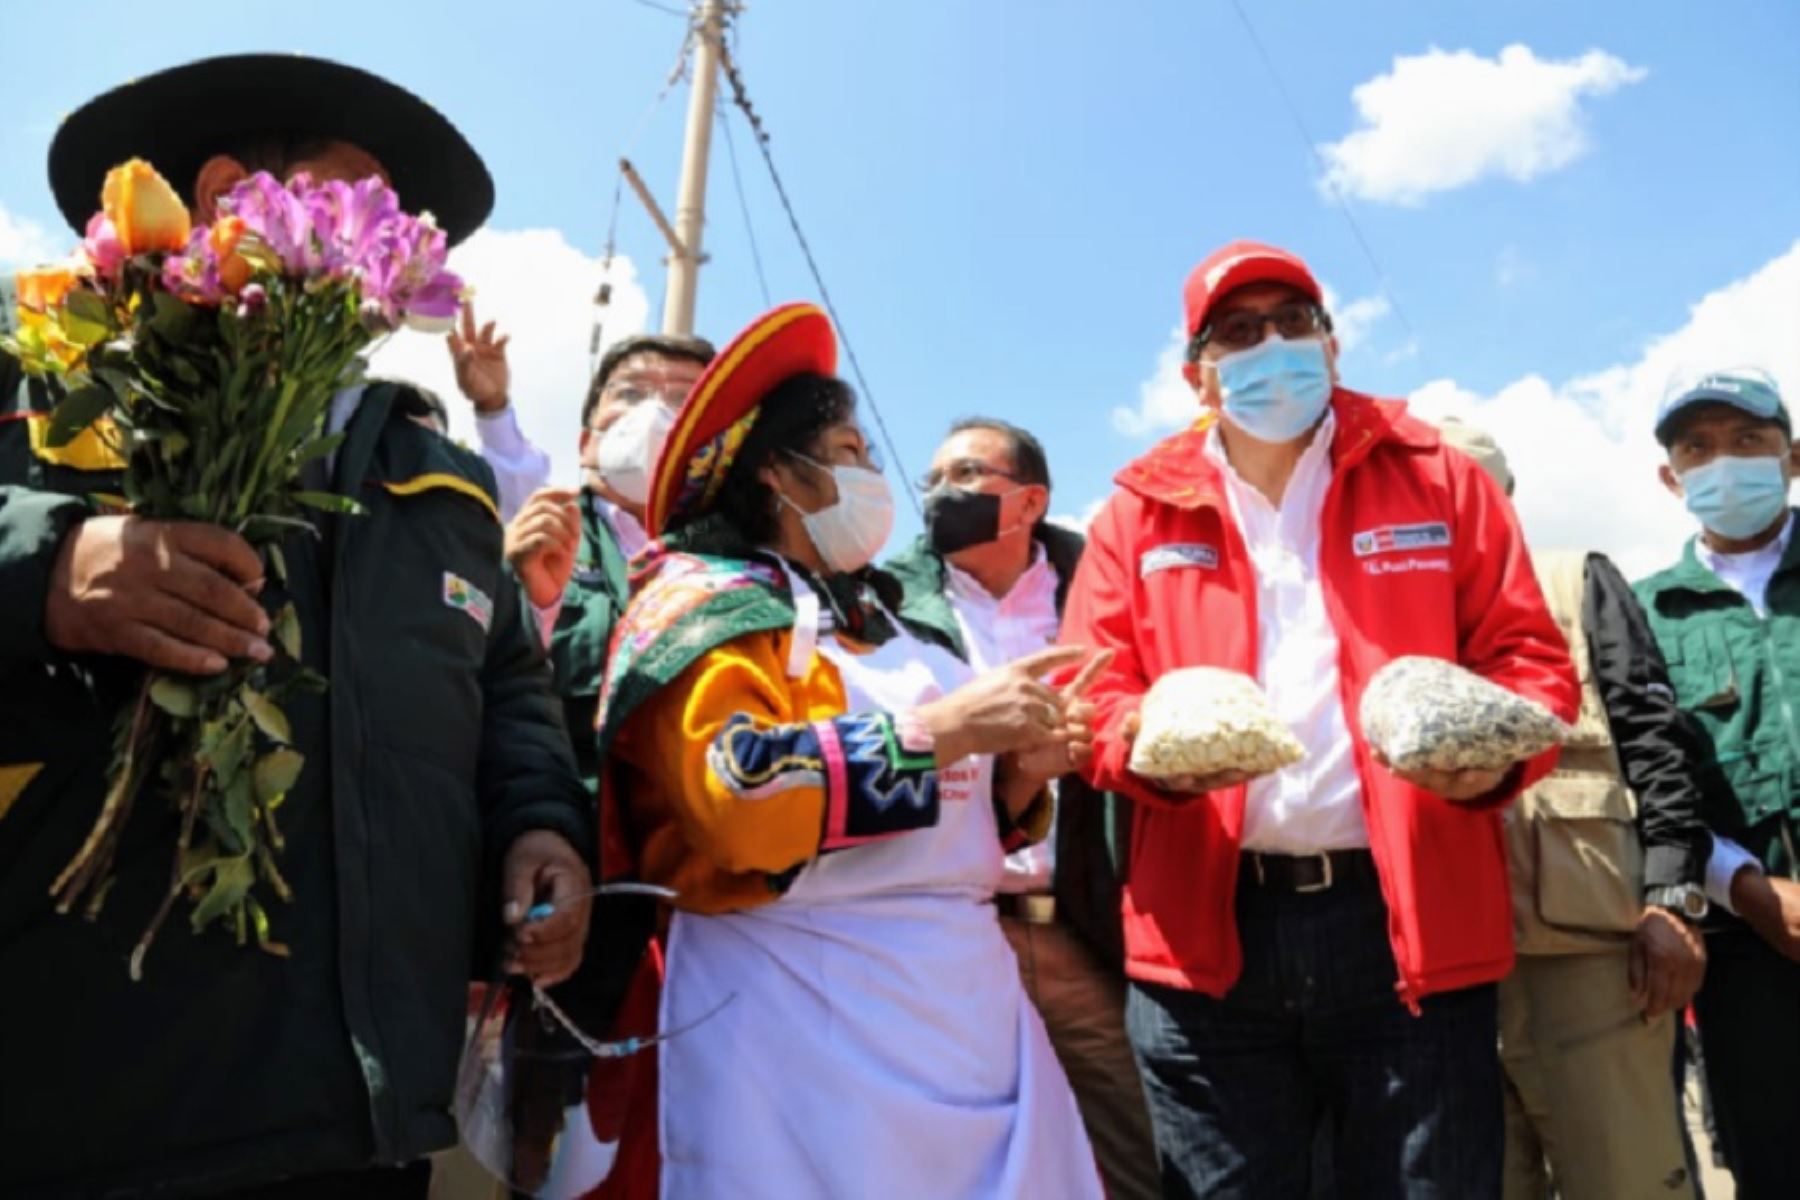 El ministro de Desarrollo Agrario y Riego, Federico Tenorio Calderón, anunció en su jornada de trabajo en la región Cusco la reactivación del Seguro Agrícola Catastrófico para atender a los pequeños productores, cuyos cultivos fueron afectados por los fenómenos naturales.